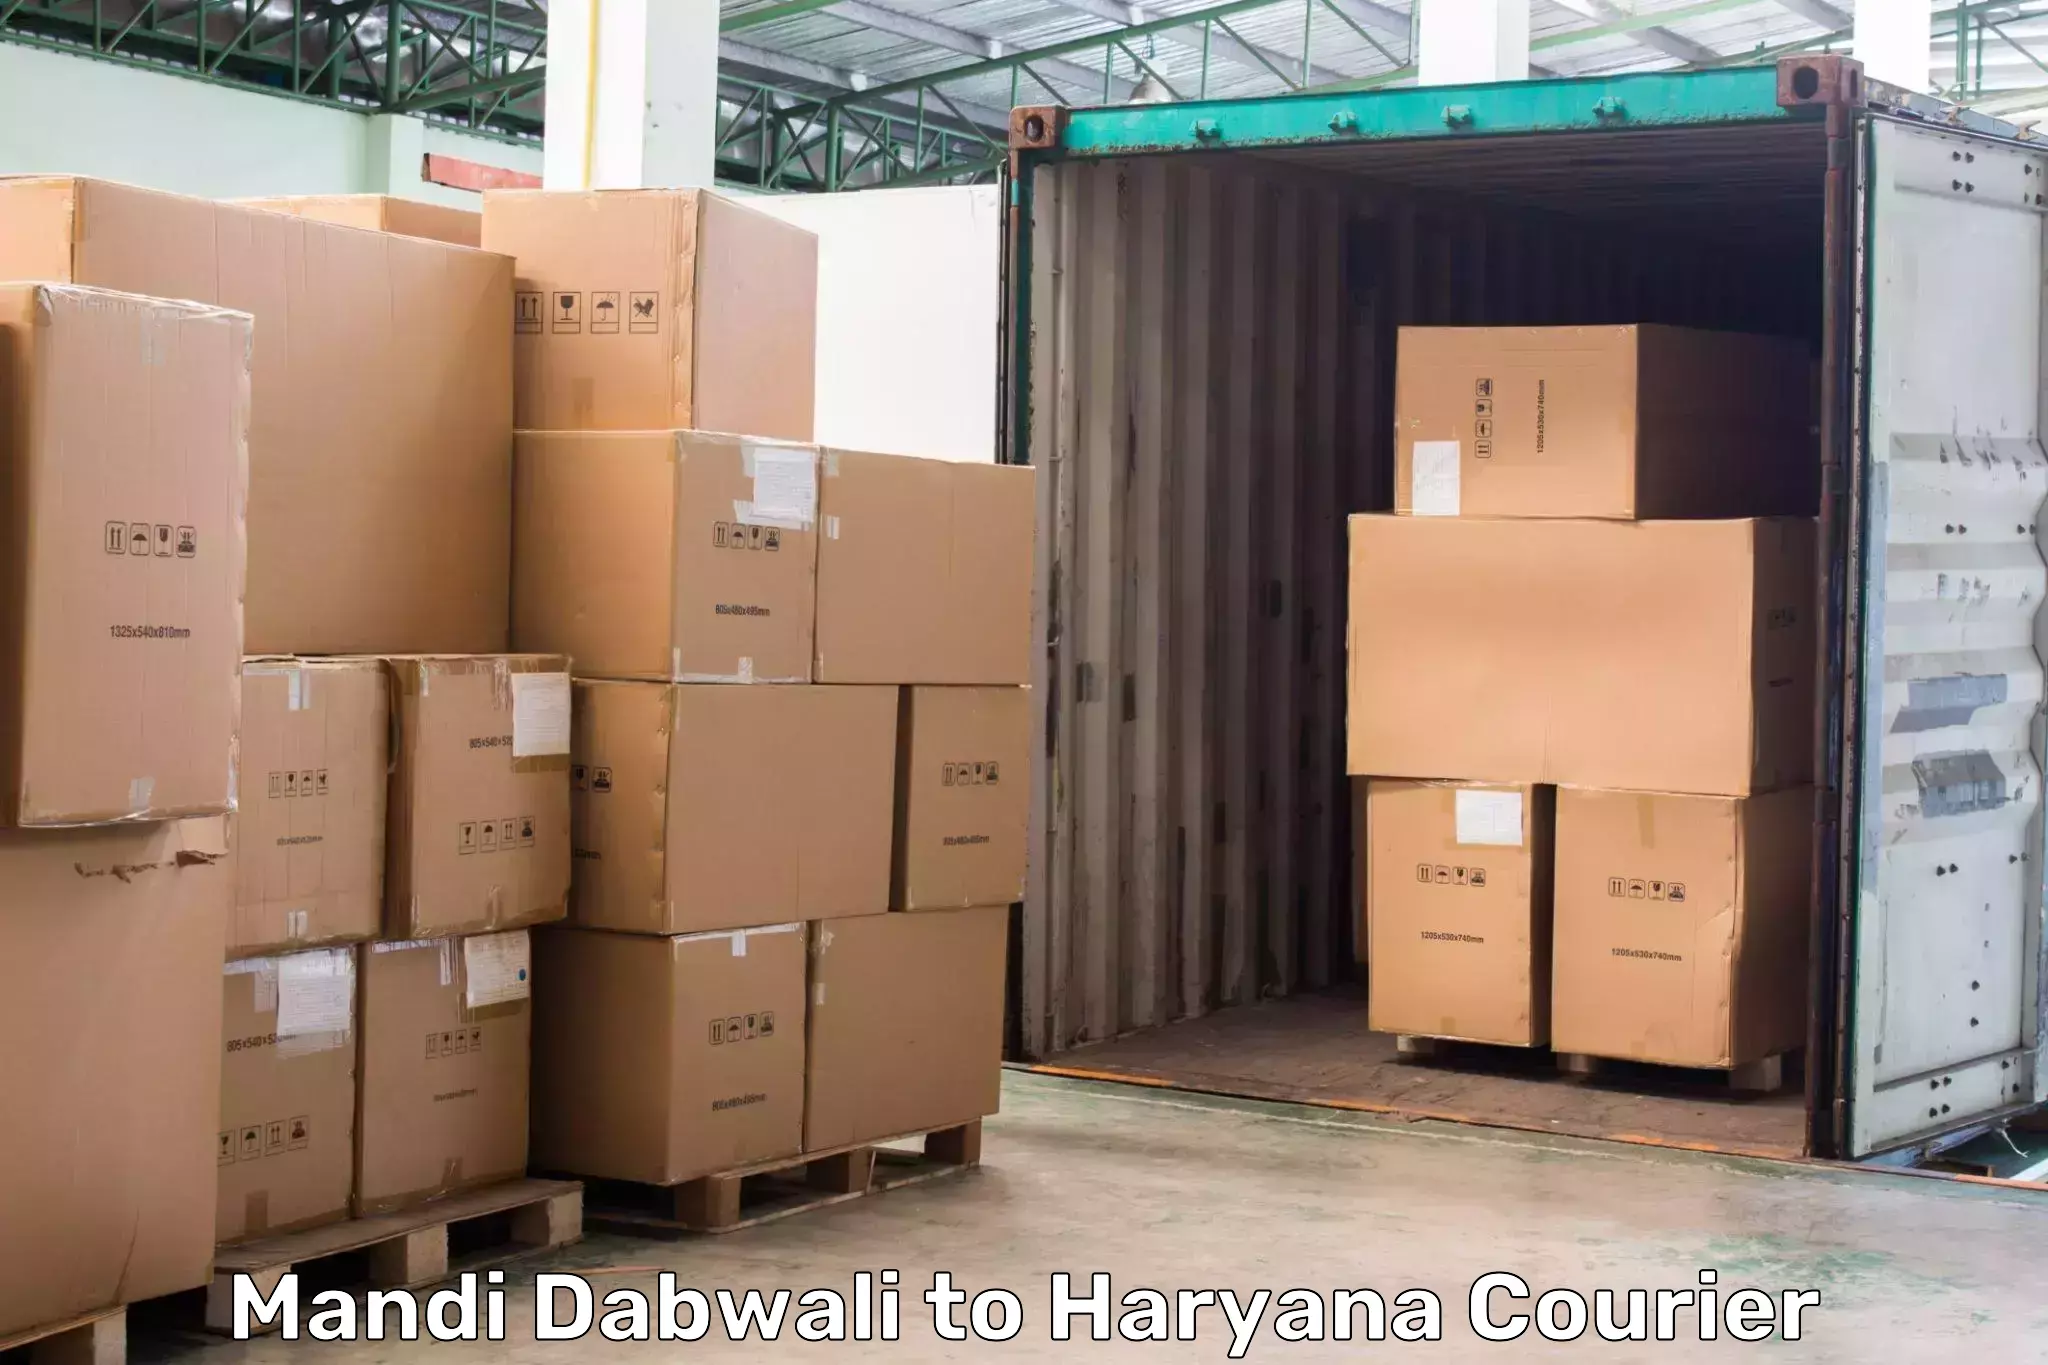 Holiday shipping services Mandi Dabwali to Gurgaon